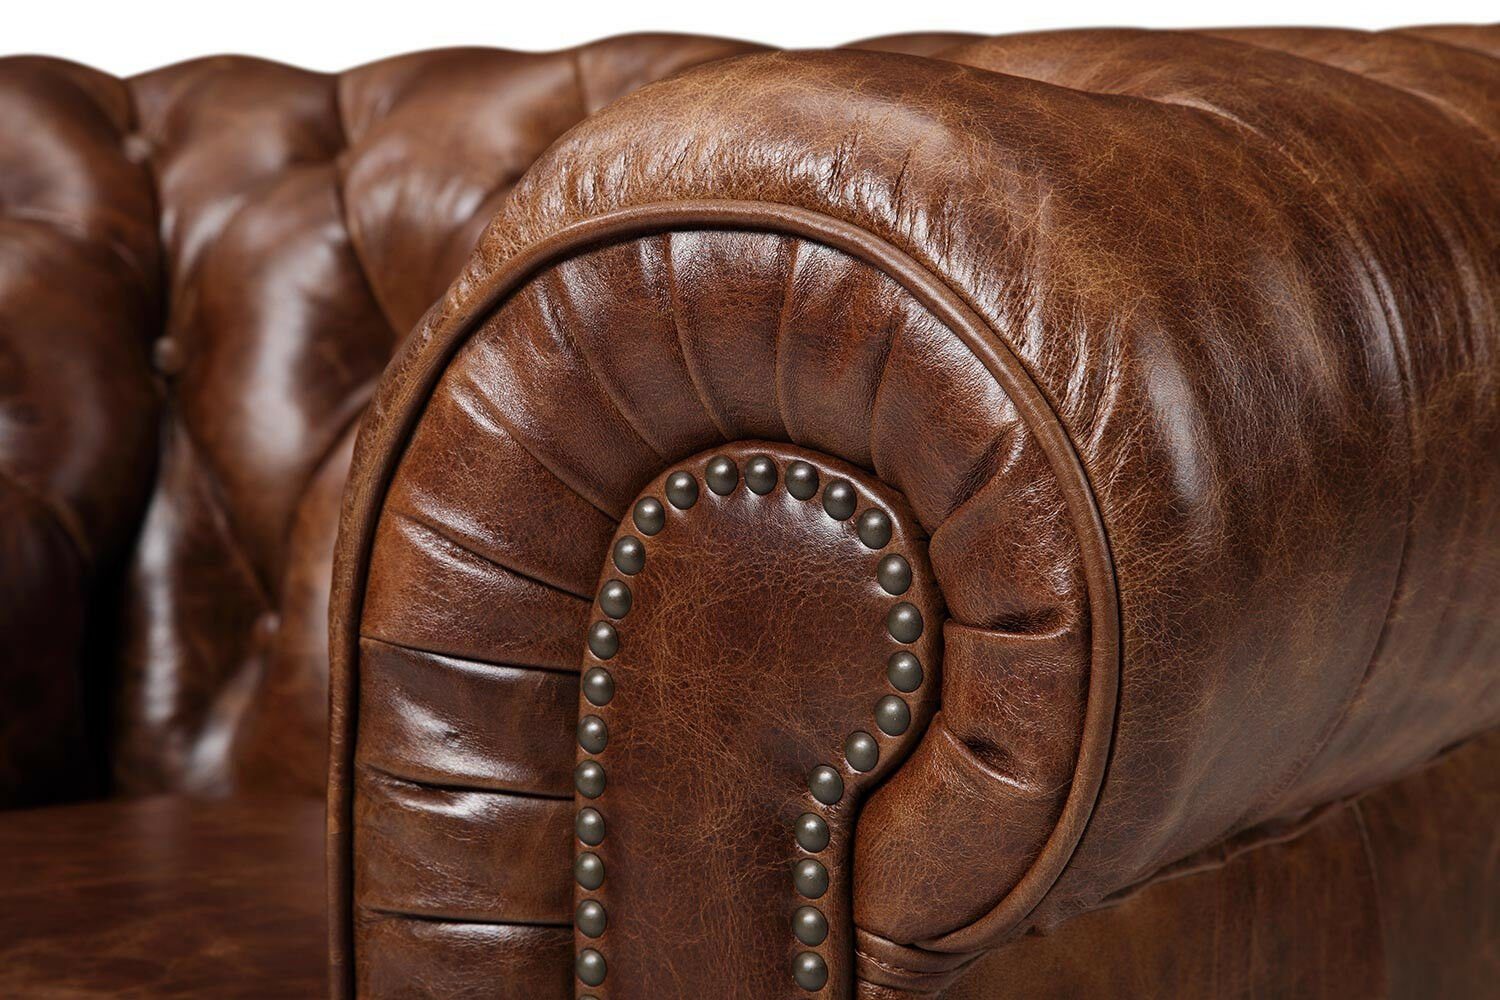 Sitzer Sofa Polster Dreisitzer Chesterfield-Sofa, Neu 3 JVmoebel Sofa Couch Stil Antik Leder